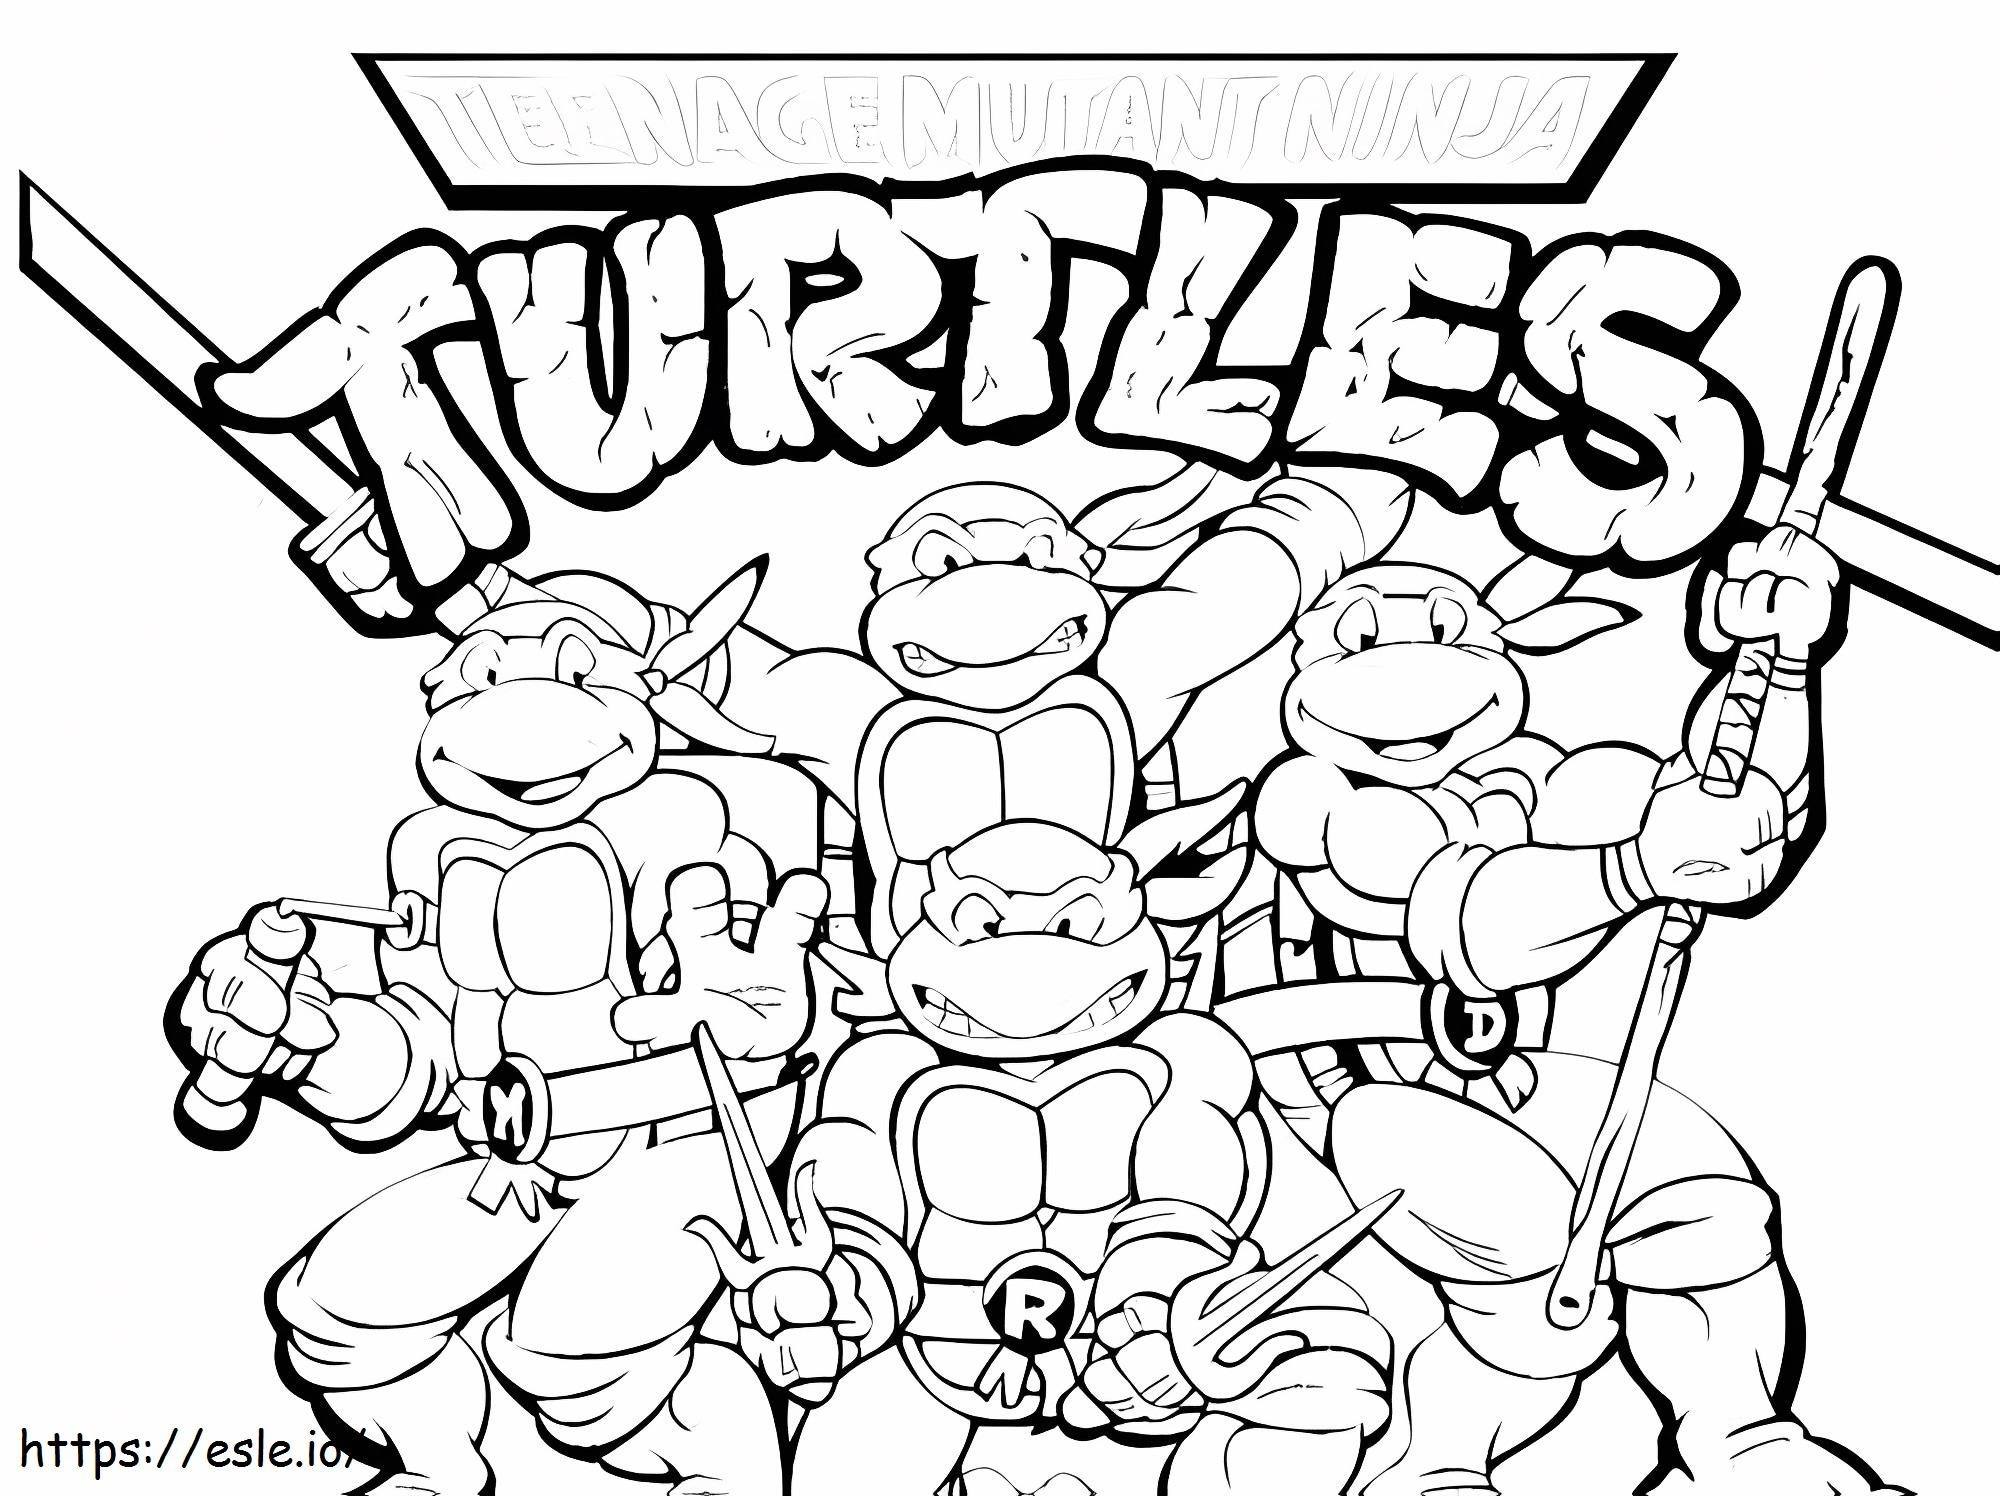 Felici le tartarughe ninja mutanti adolescenti da colorare